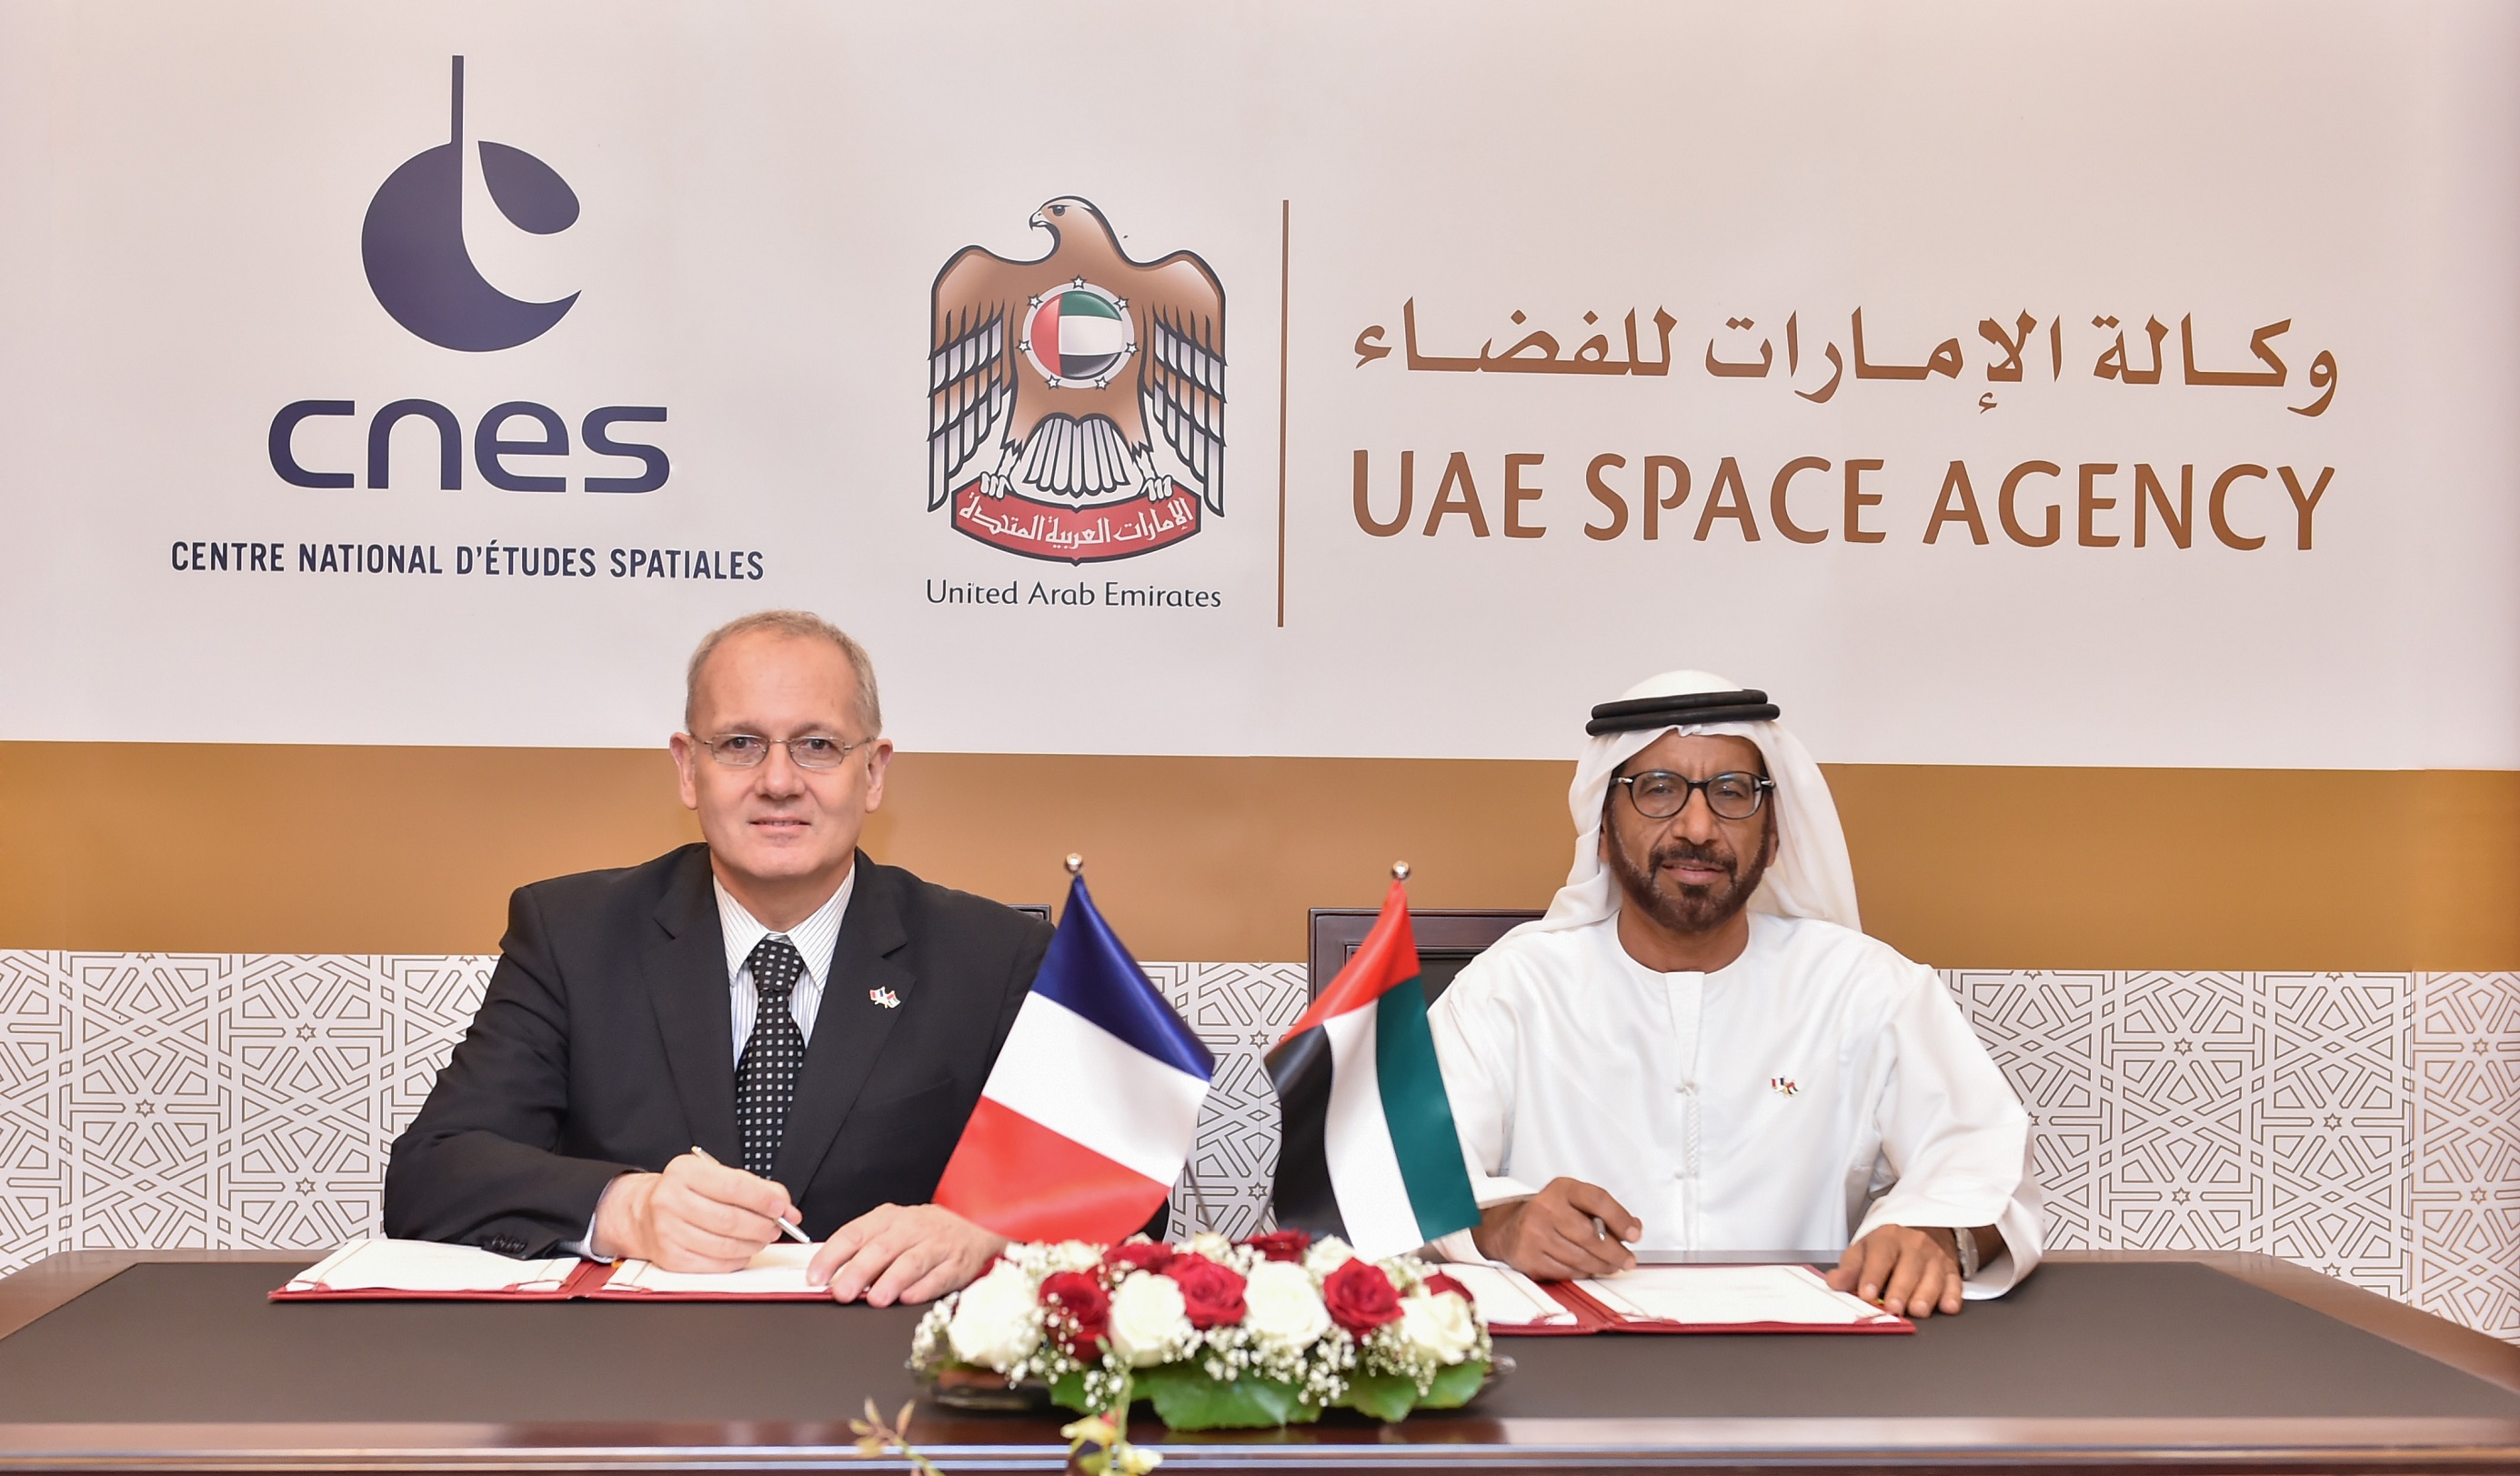 "الإمارات للفضاء"و" إيرباص " تطلقان مبادرة المهندس الفضائي الصغير